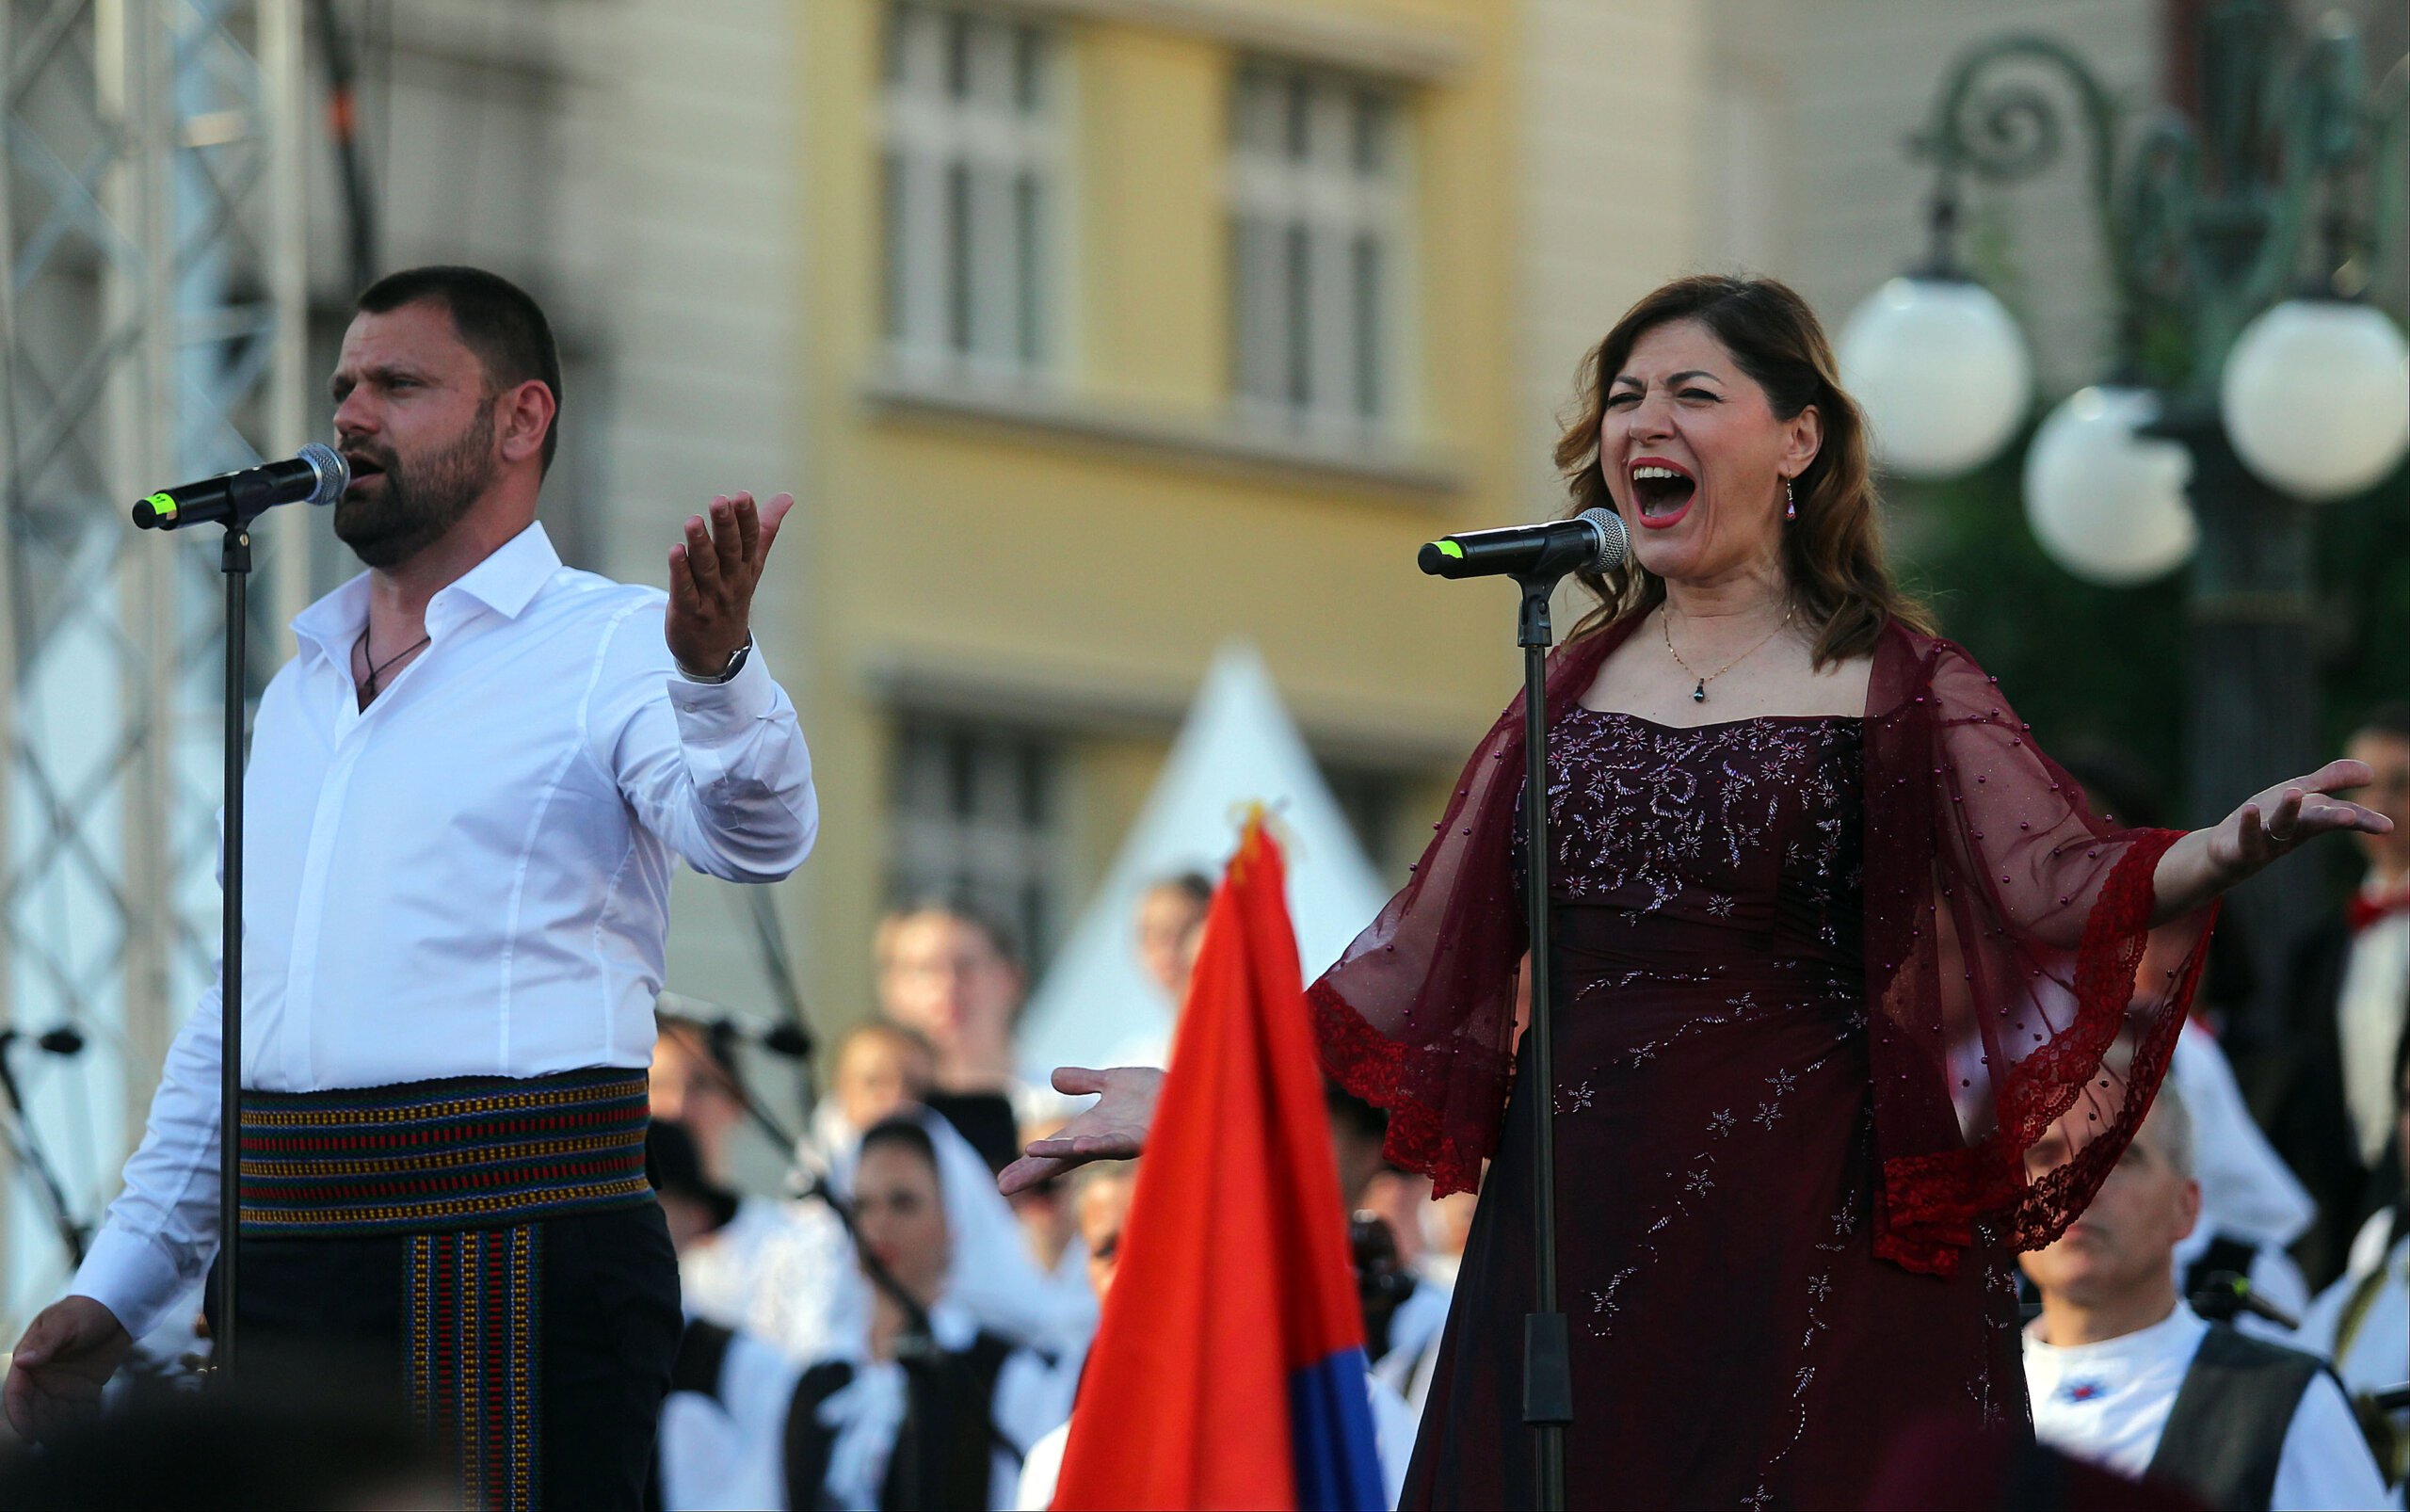 (FOTO) Kako je izgledala manifestacija "Jedan narod, jedan sabor - Srbija i Srpska" na Trgu republike u fotografijama? 9